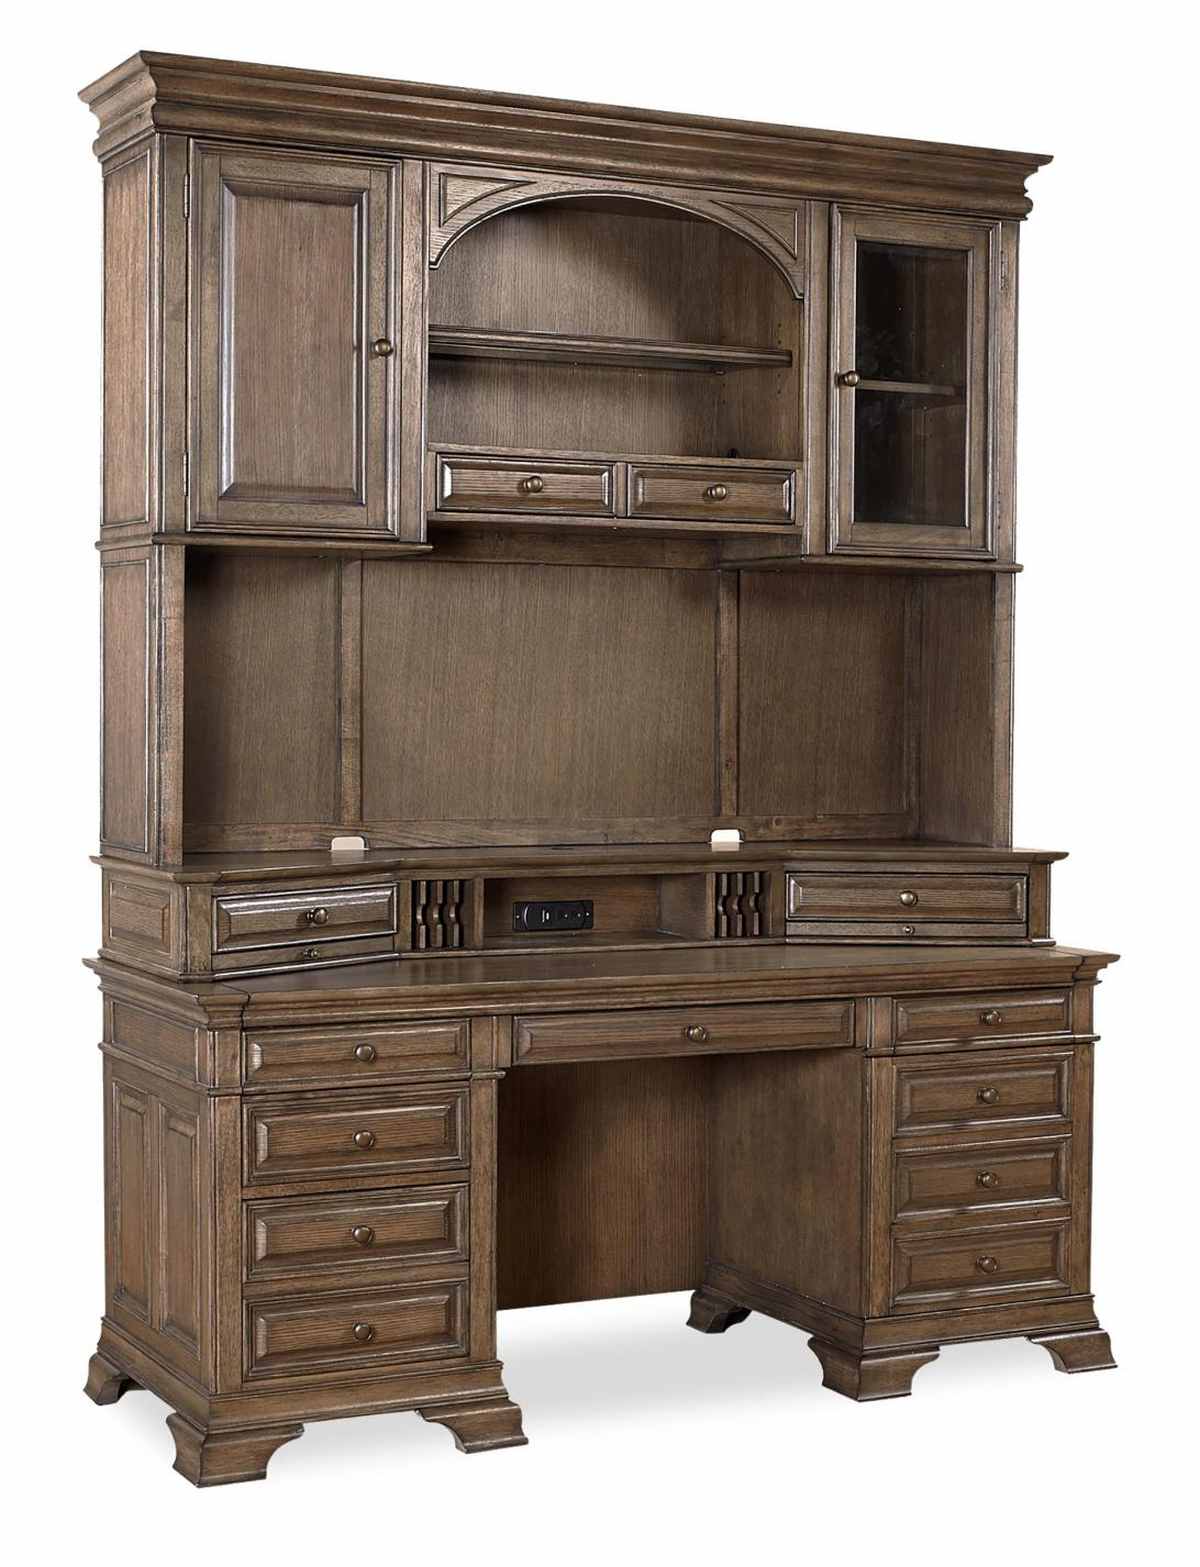 Aspenhome® Arcadia Truffle 72" Credenza Desk with Hutch